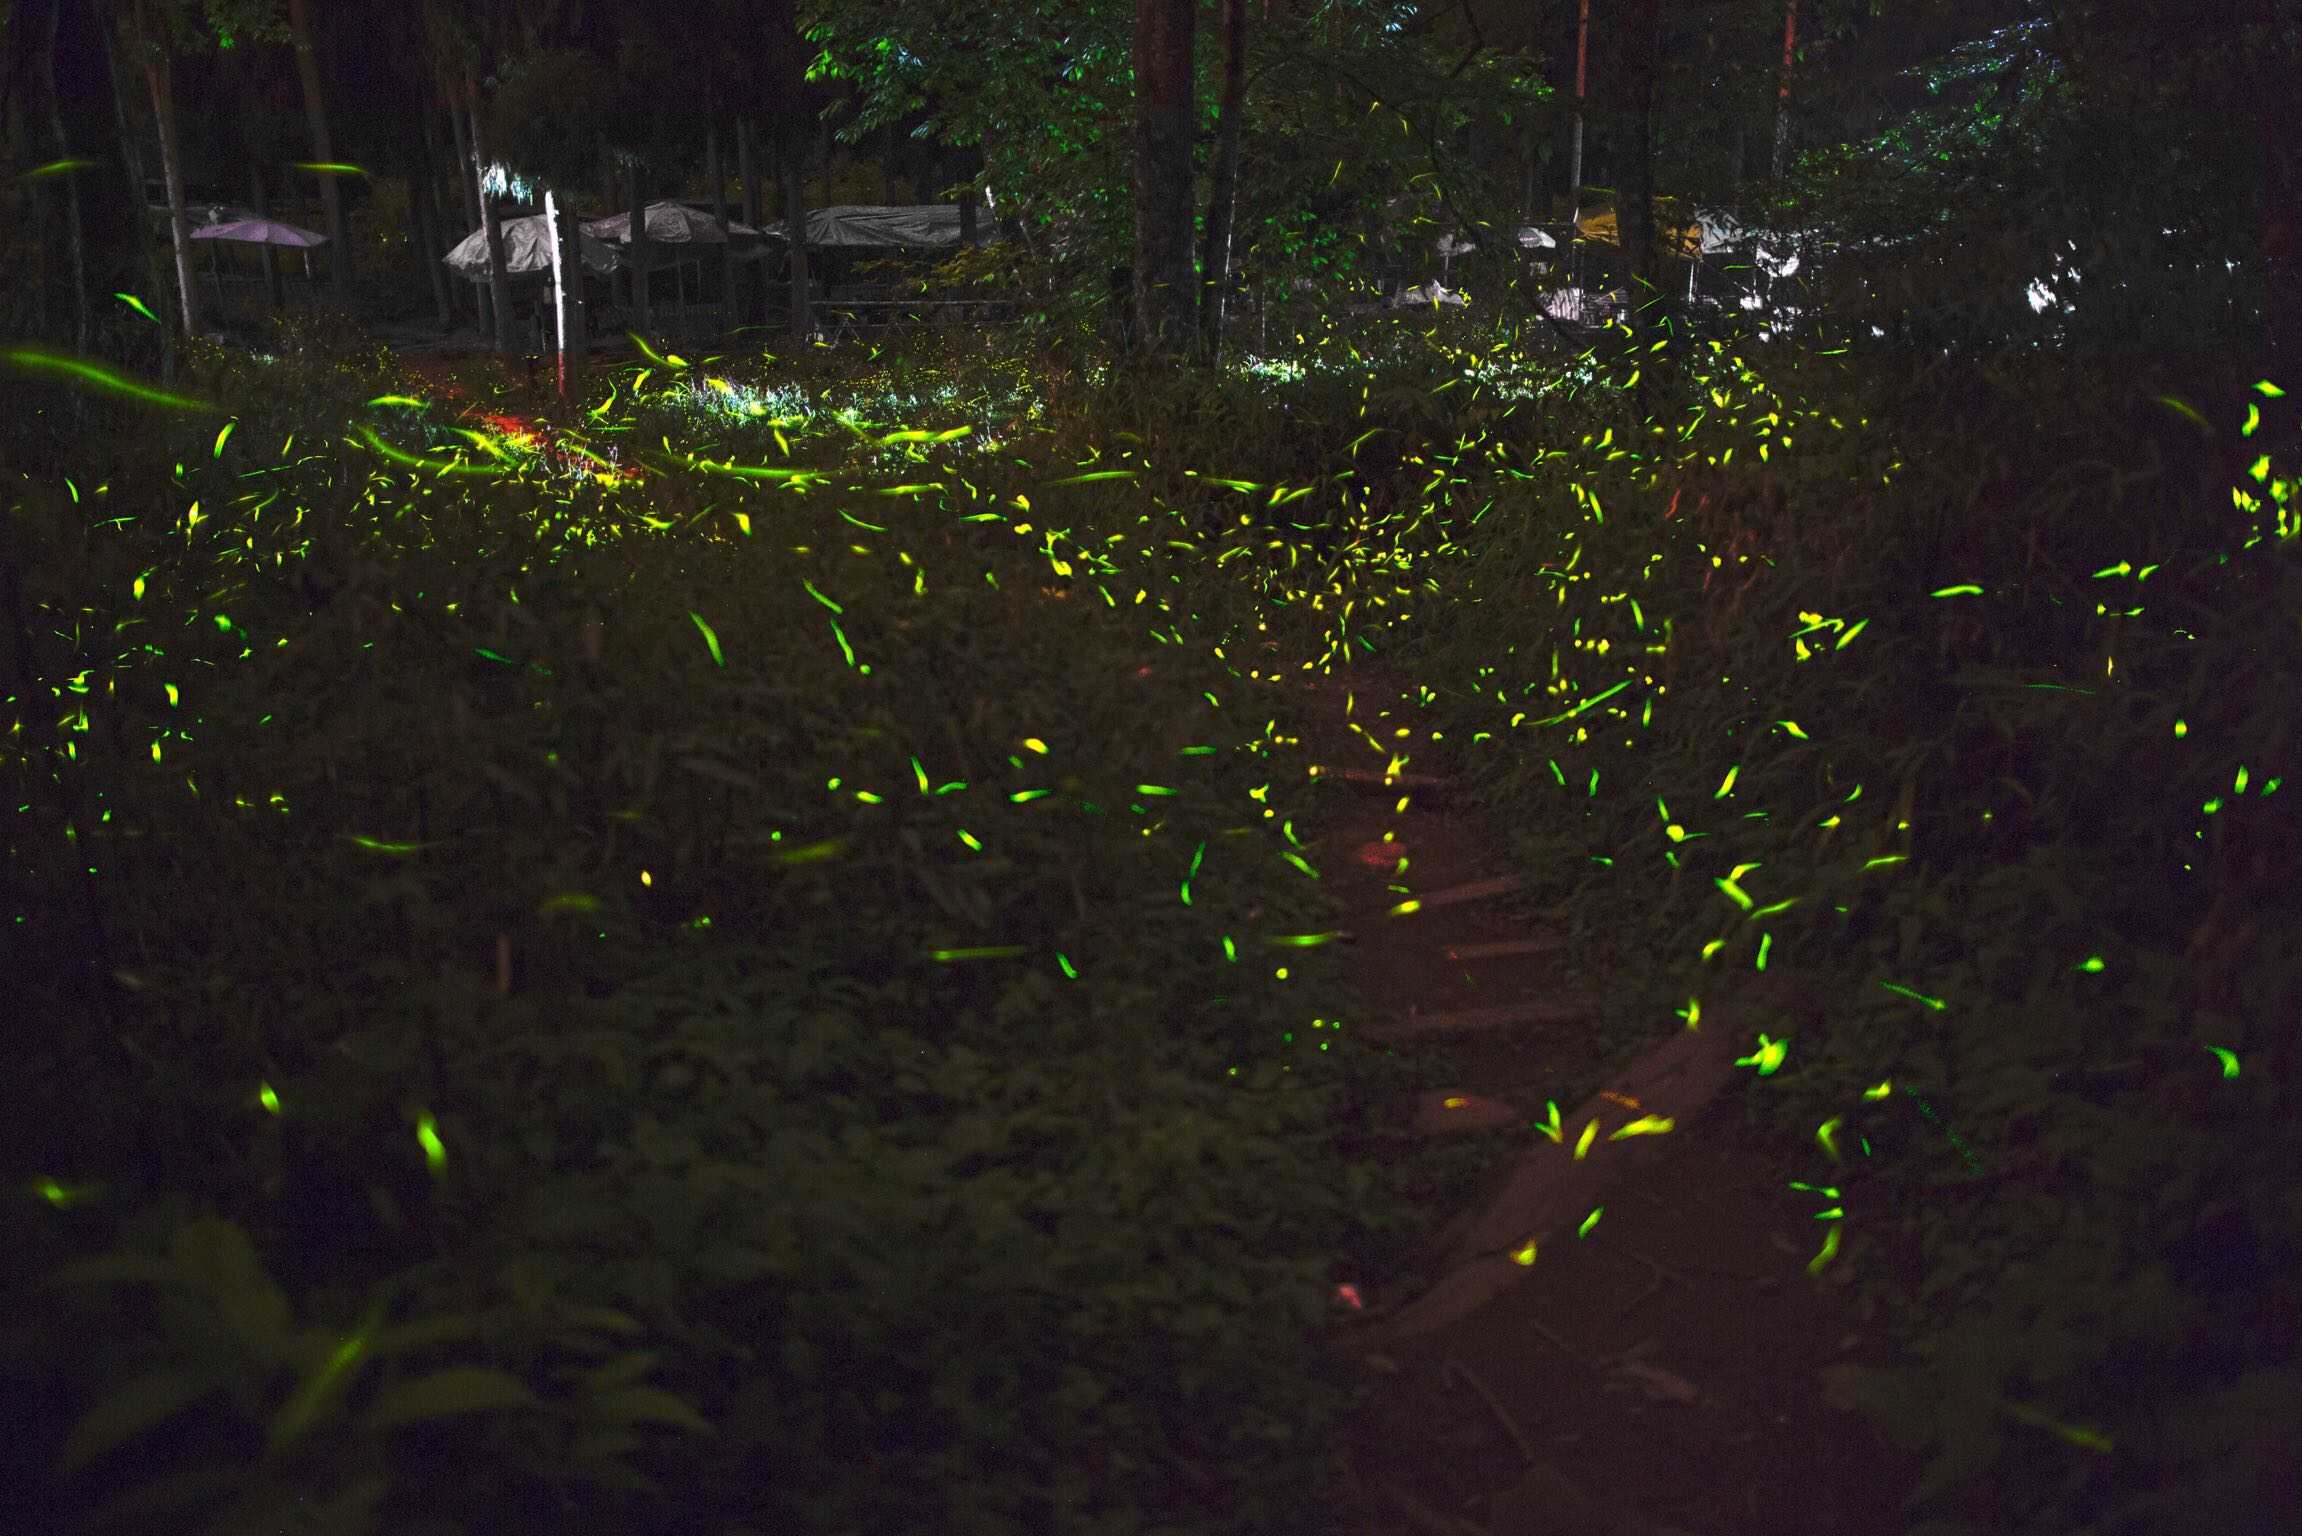 成都市的下属一个叫邛崃天台山的地方可以看到成片的萤火虫飞舞的景象